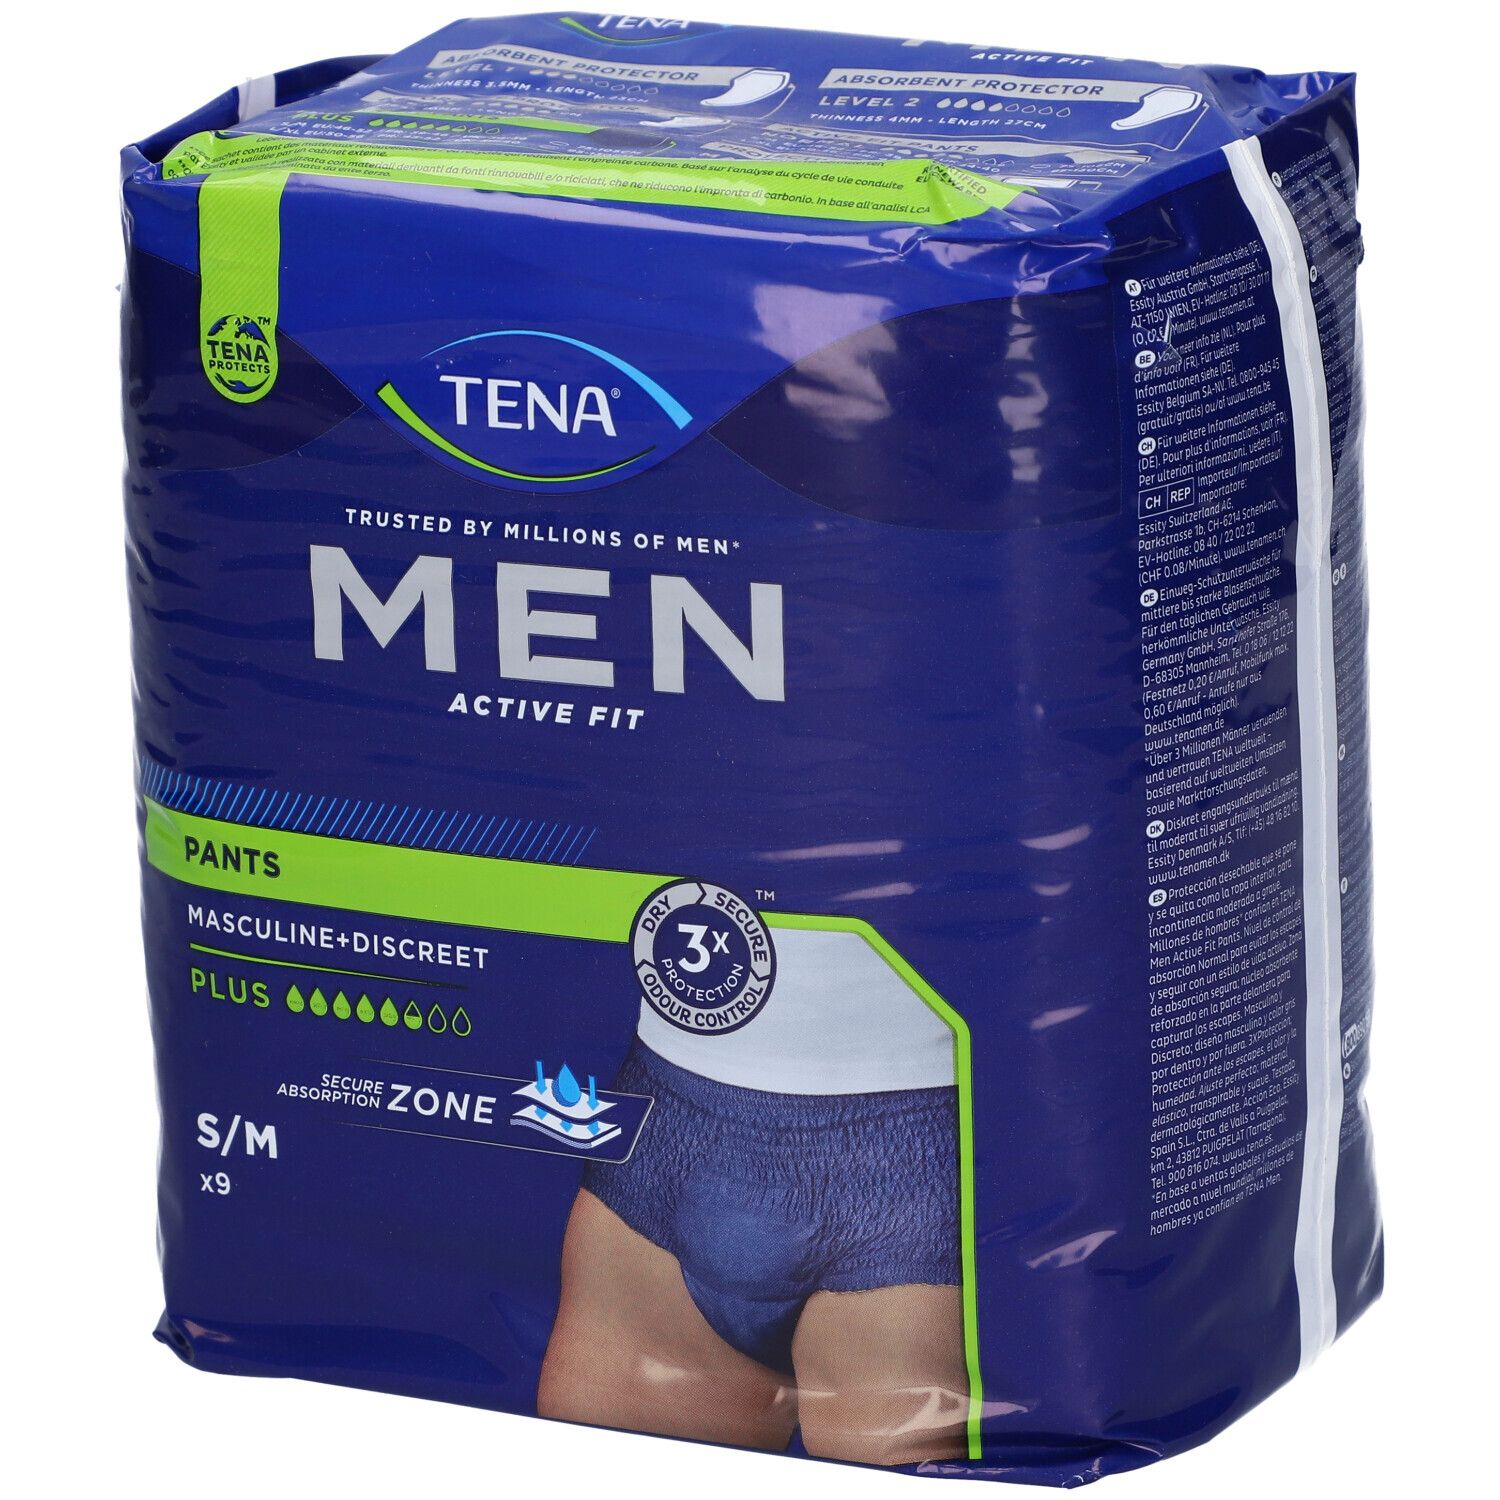 TENA Men Active Fit Pants Taglia S/M